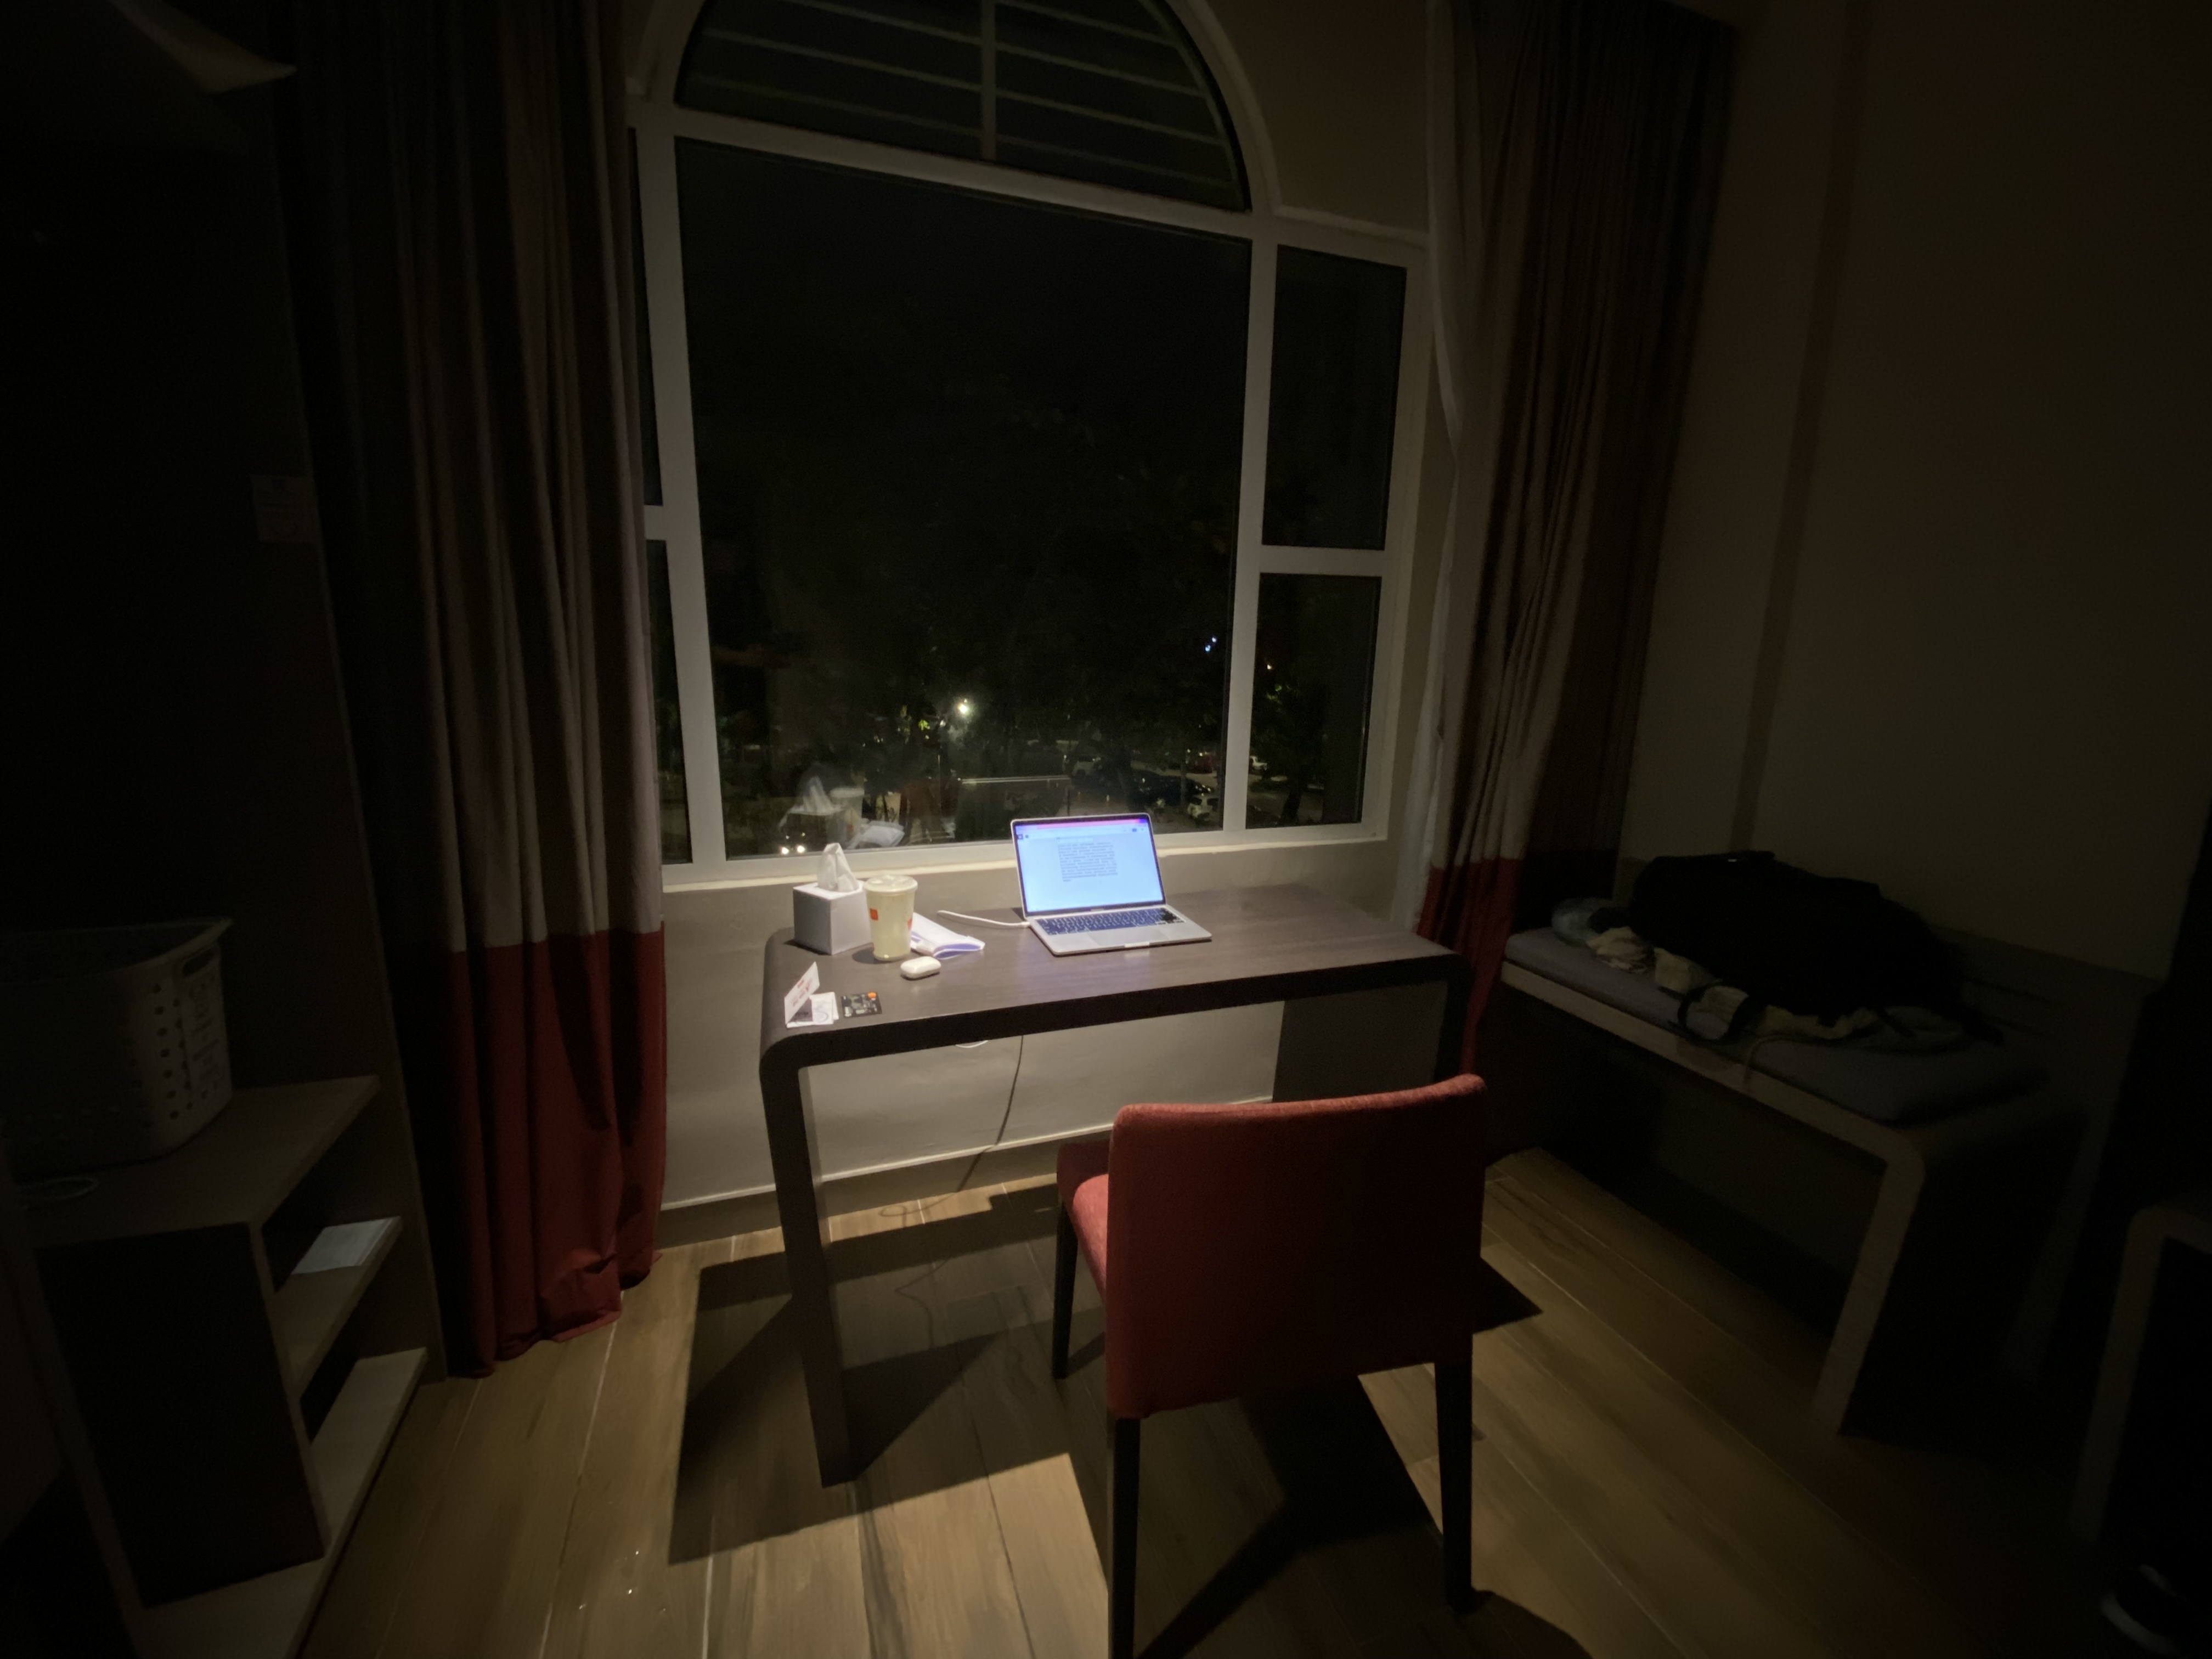 一张酒店房间中拍摄的图片，展示了一个只有面向窗户的书桌被投影灯光的场景。书桌上有餐巾纸、饮料、笔记本计算机和几张卡片